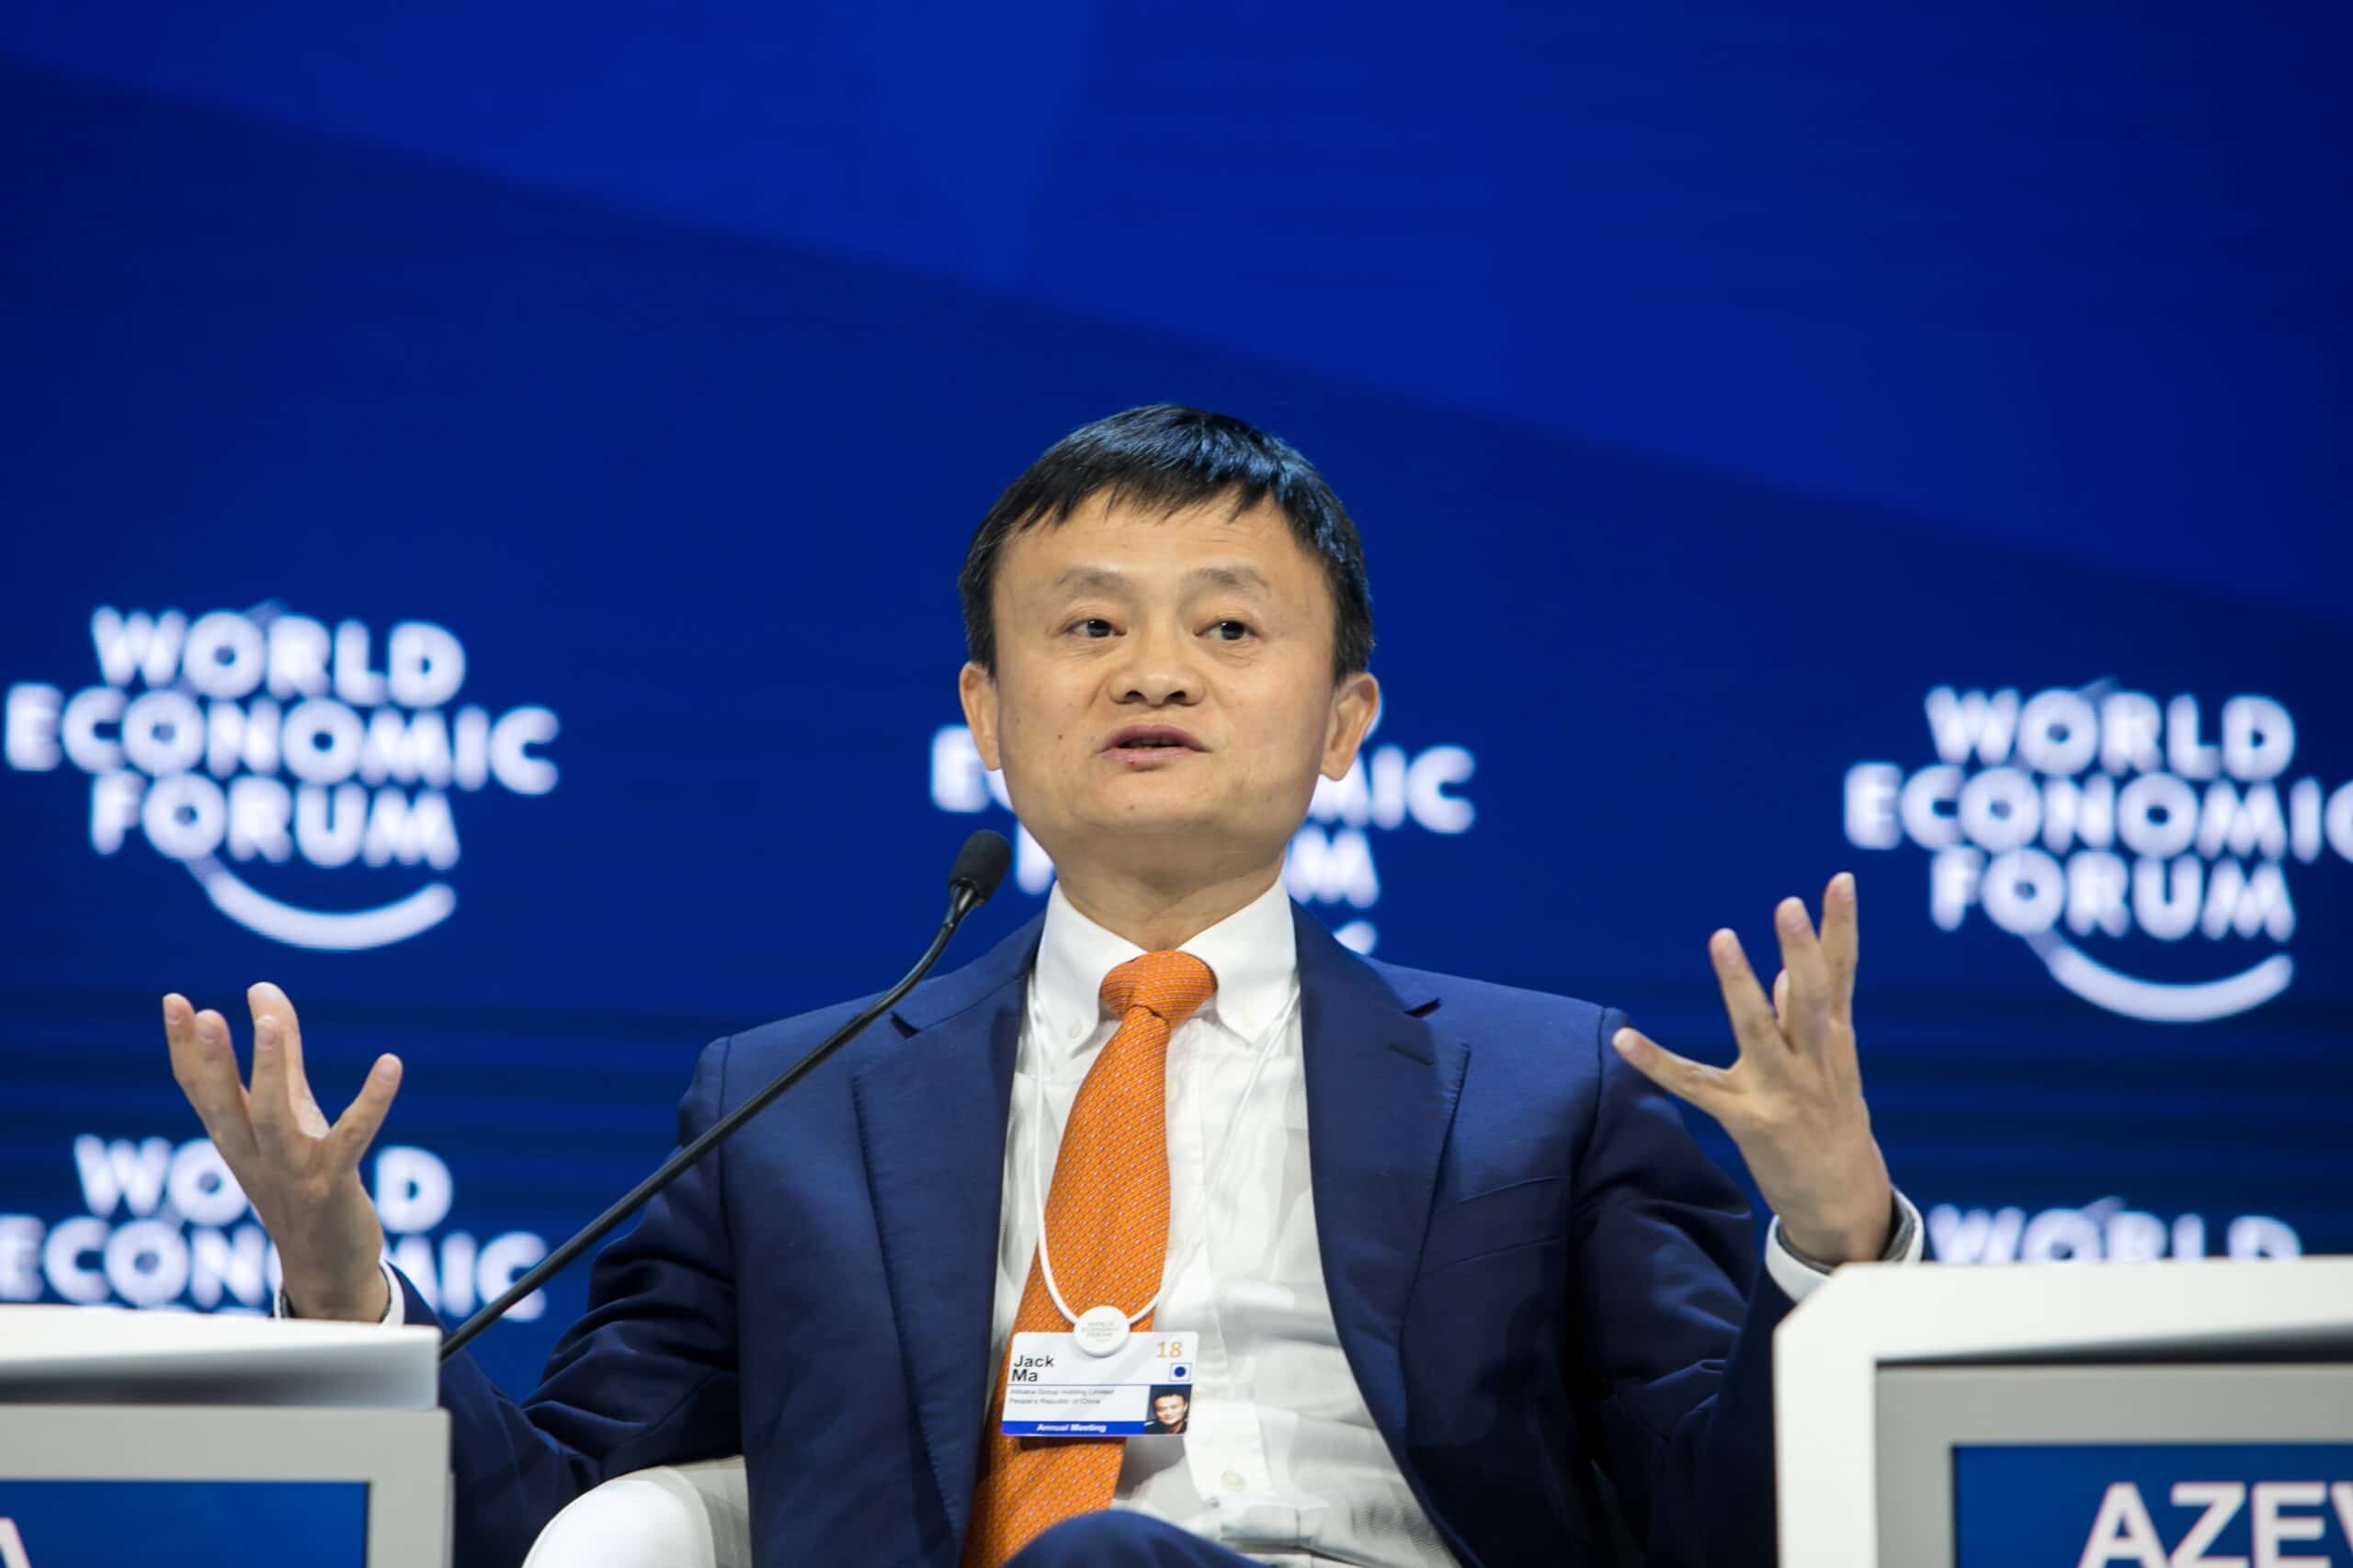 Dov’è Jack Ma. Gli indizi che portano a Tokyo